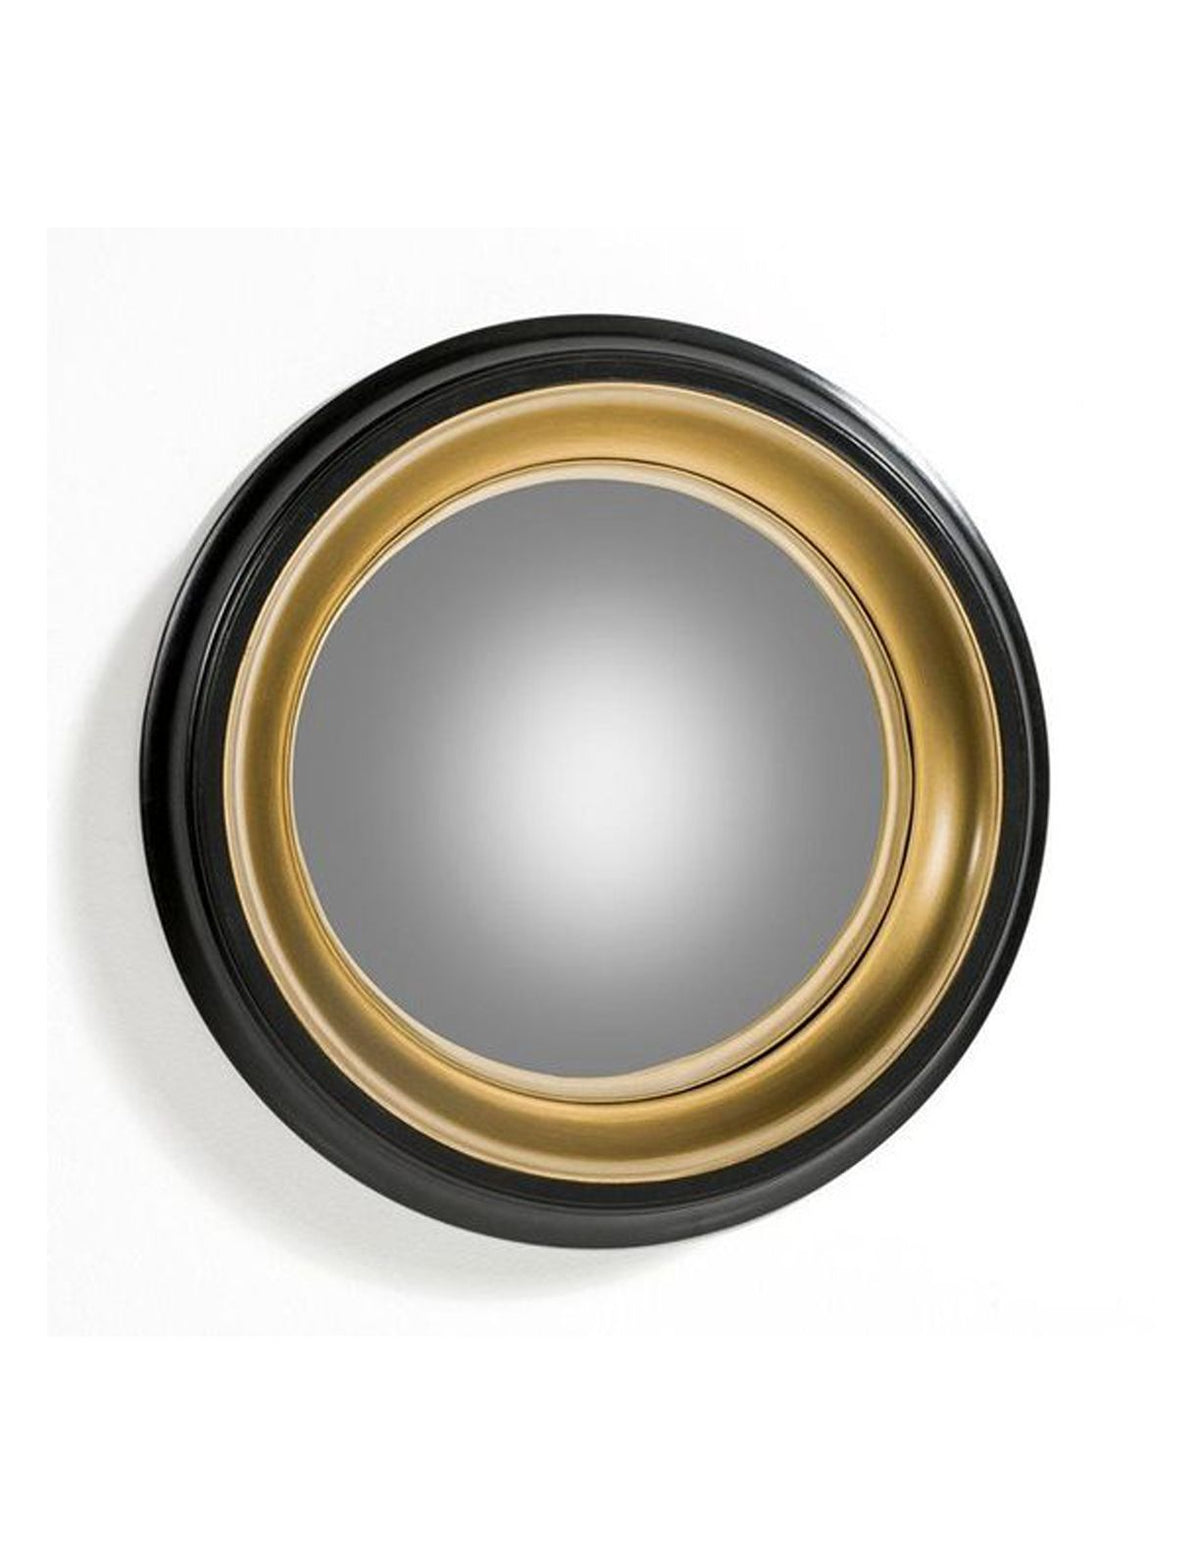 Round Black & gold z1 decorative mirror